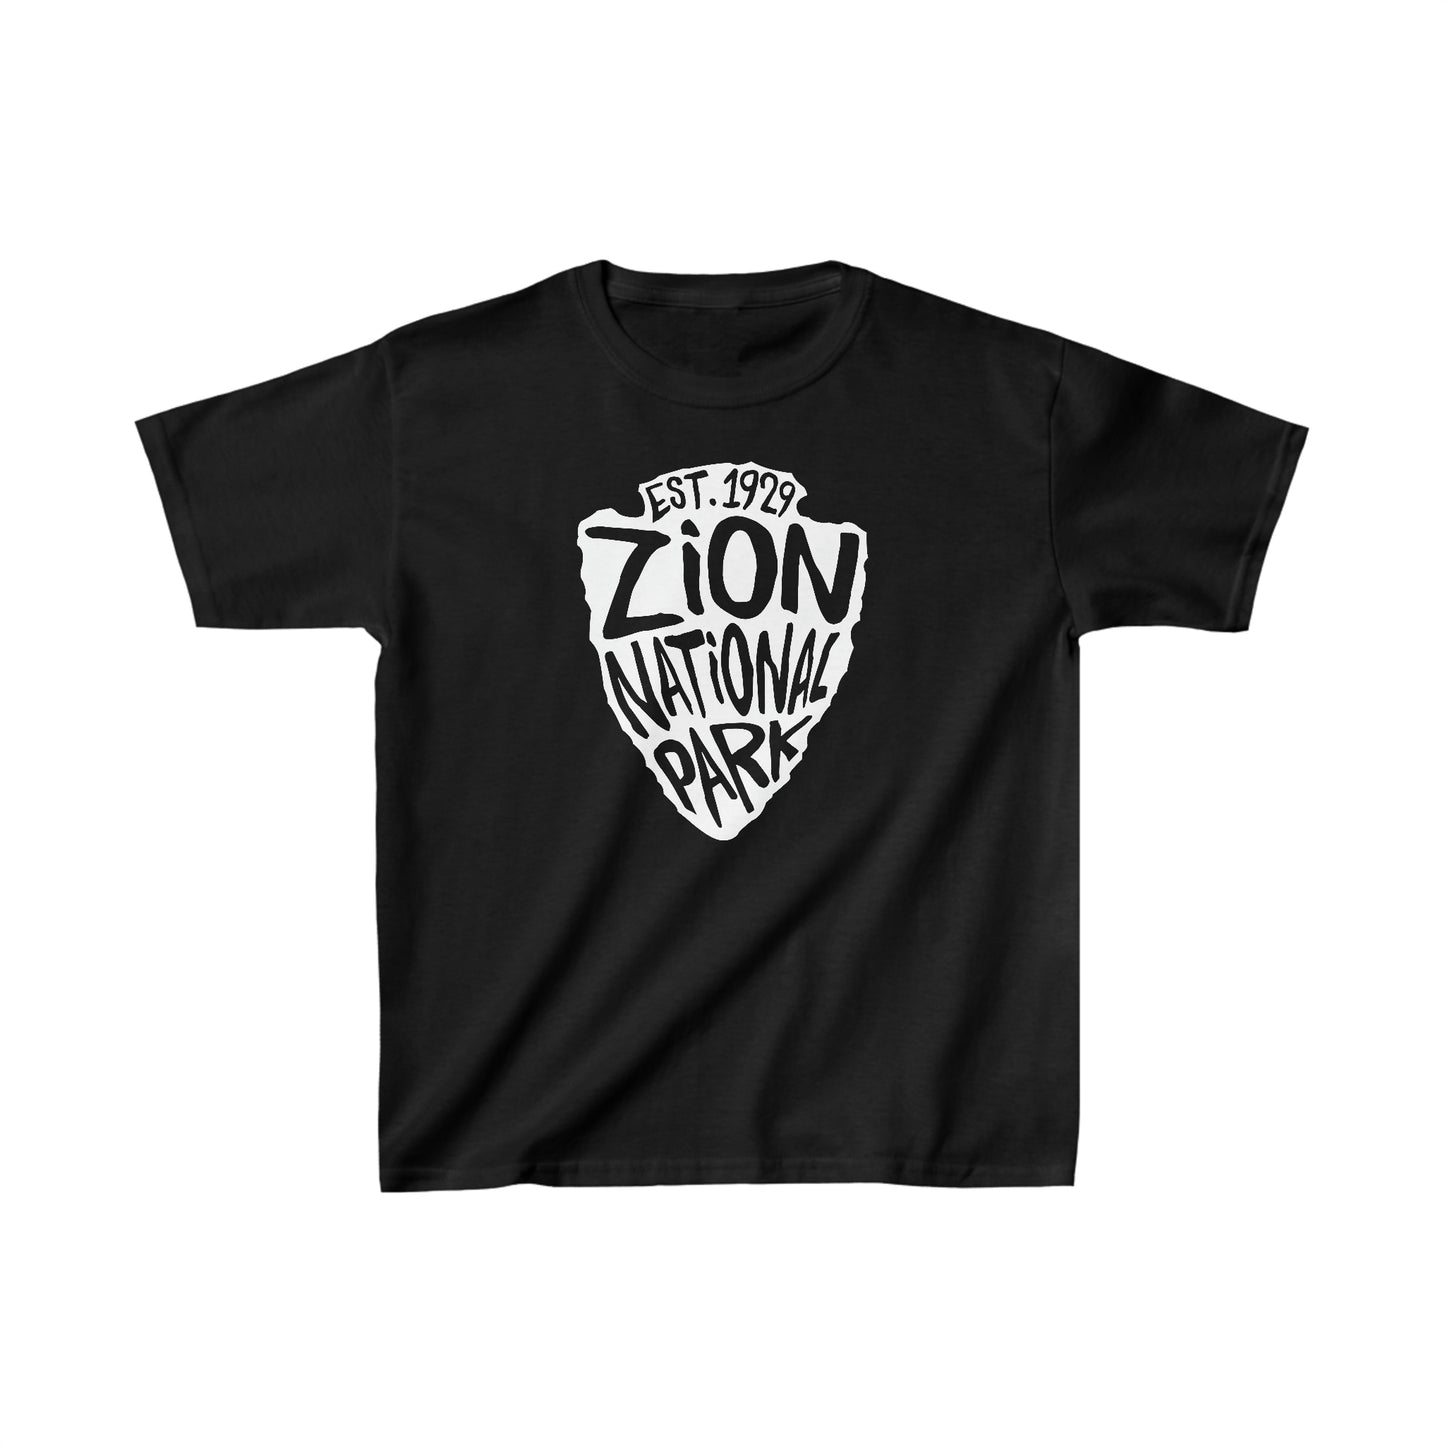 Zion National Park Child T-Shirt - Arrowhead Design